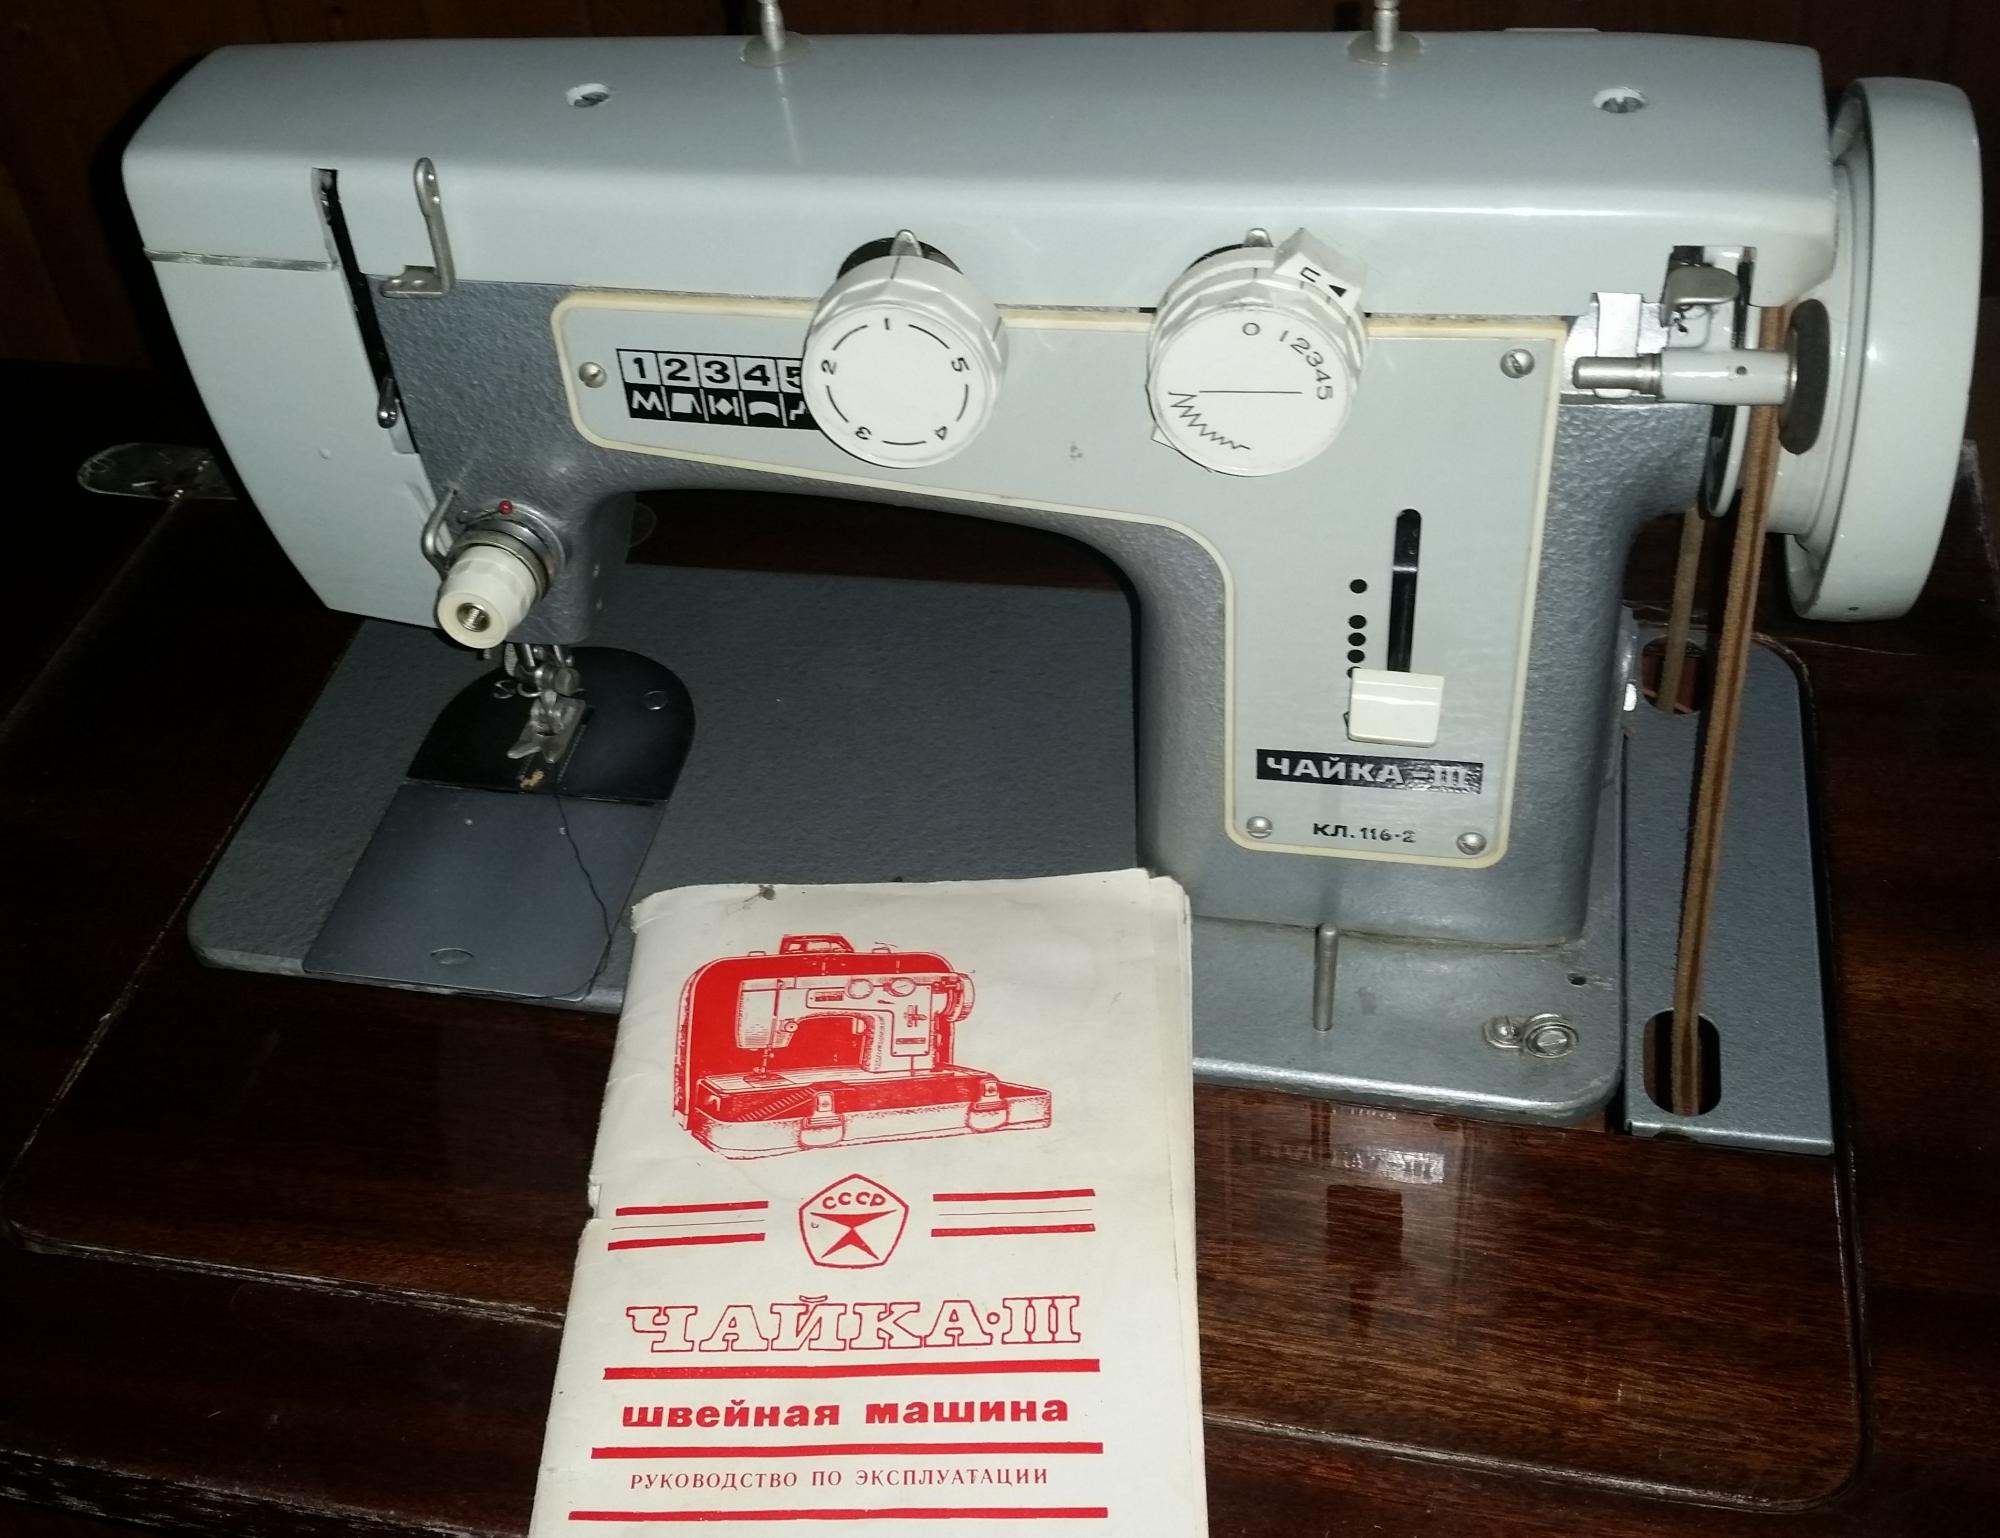 Швейная машинка Чайка-3 кл.116-2